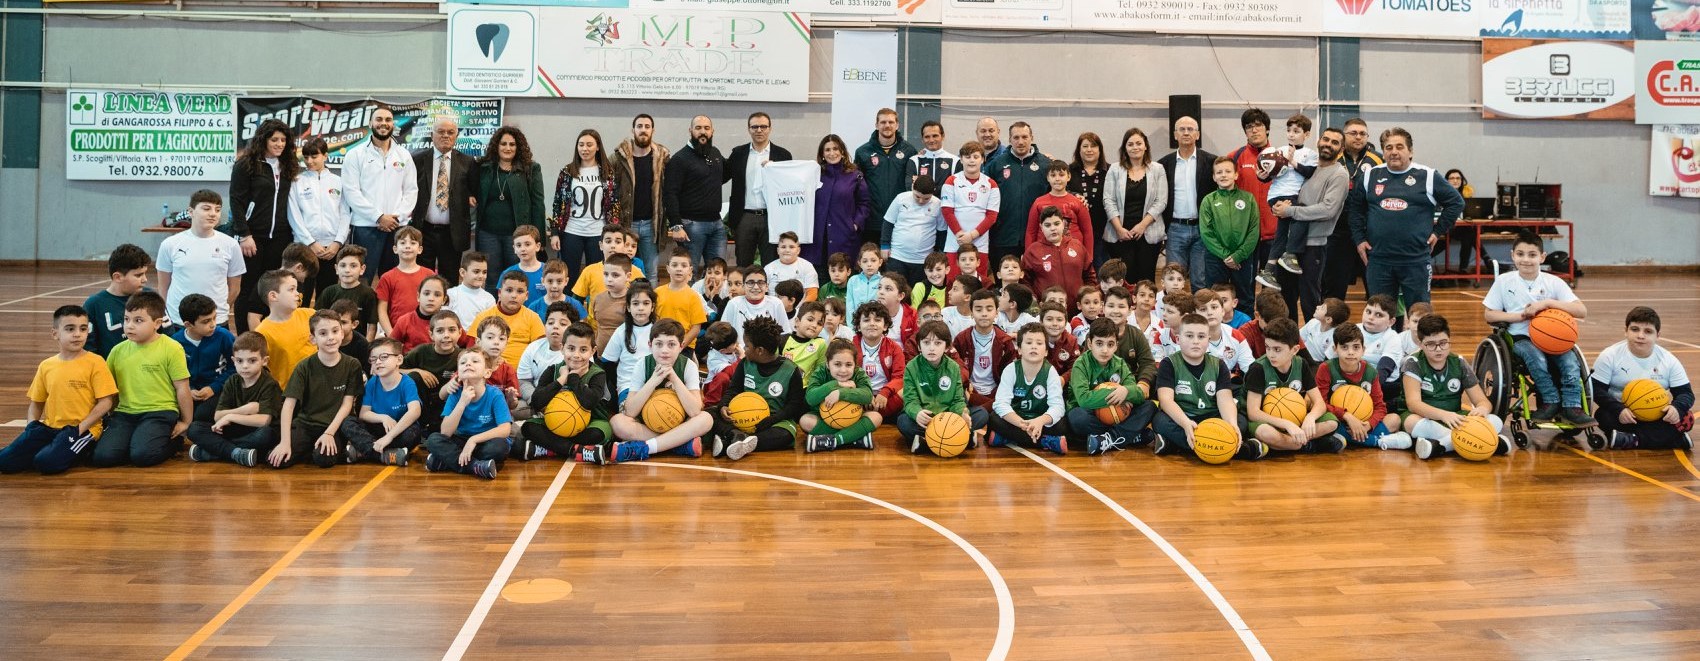 Vittoria, inaugurato il programma nazionale "Sport senza barriere" promosso da Fondazione Milan